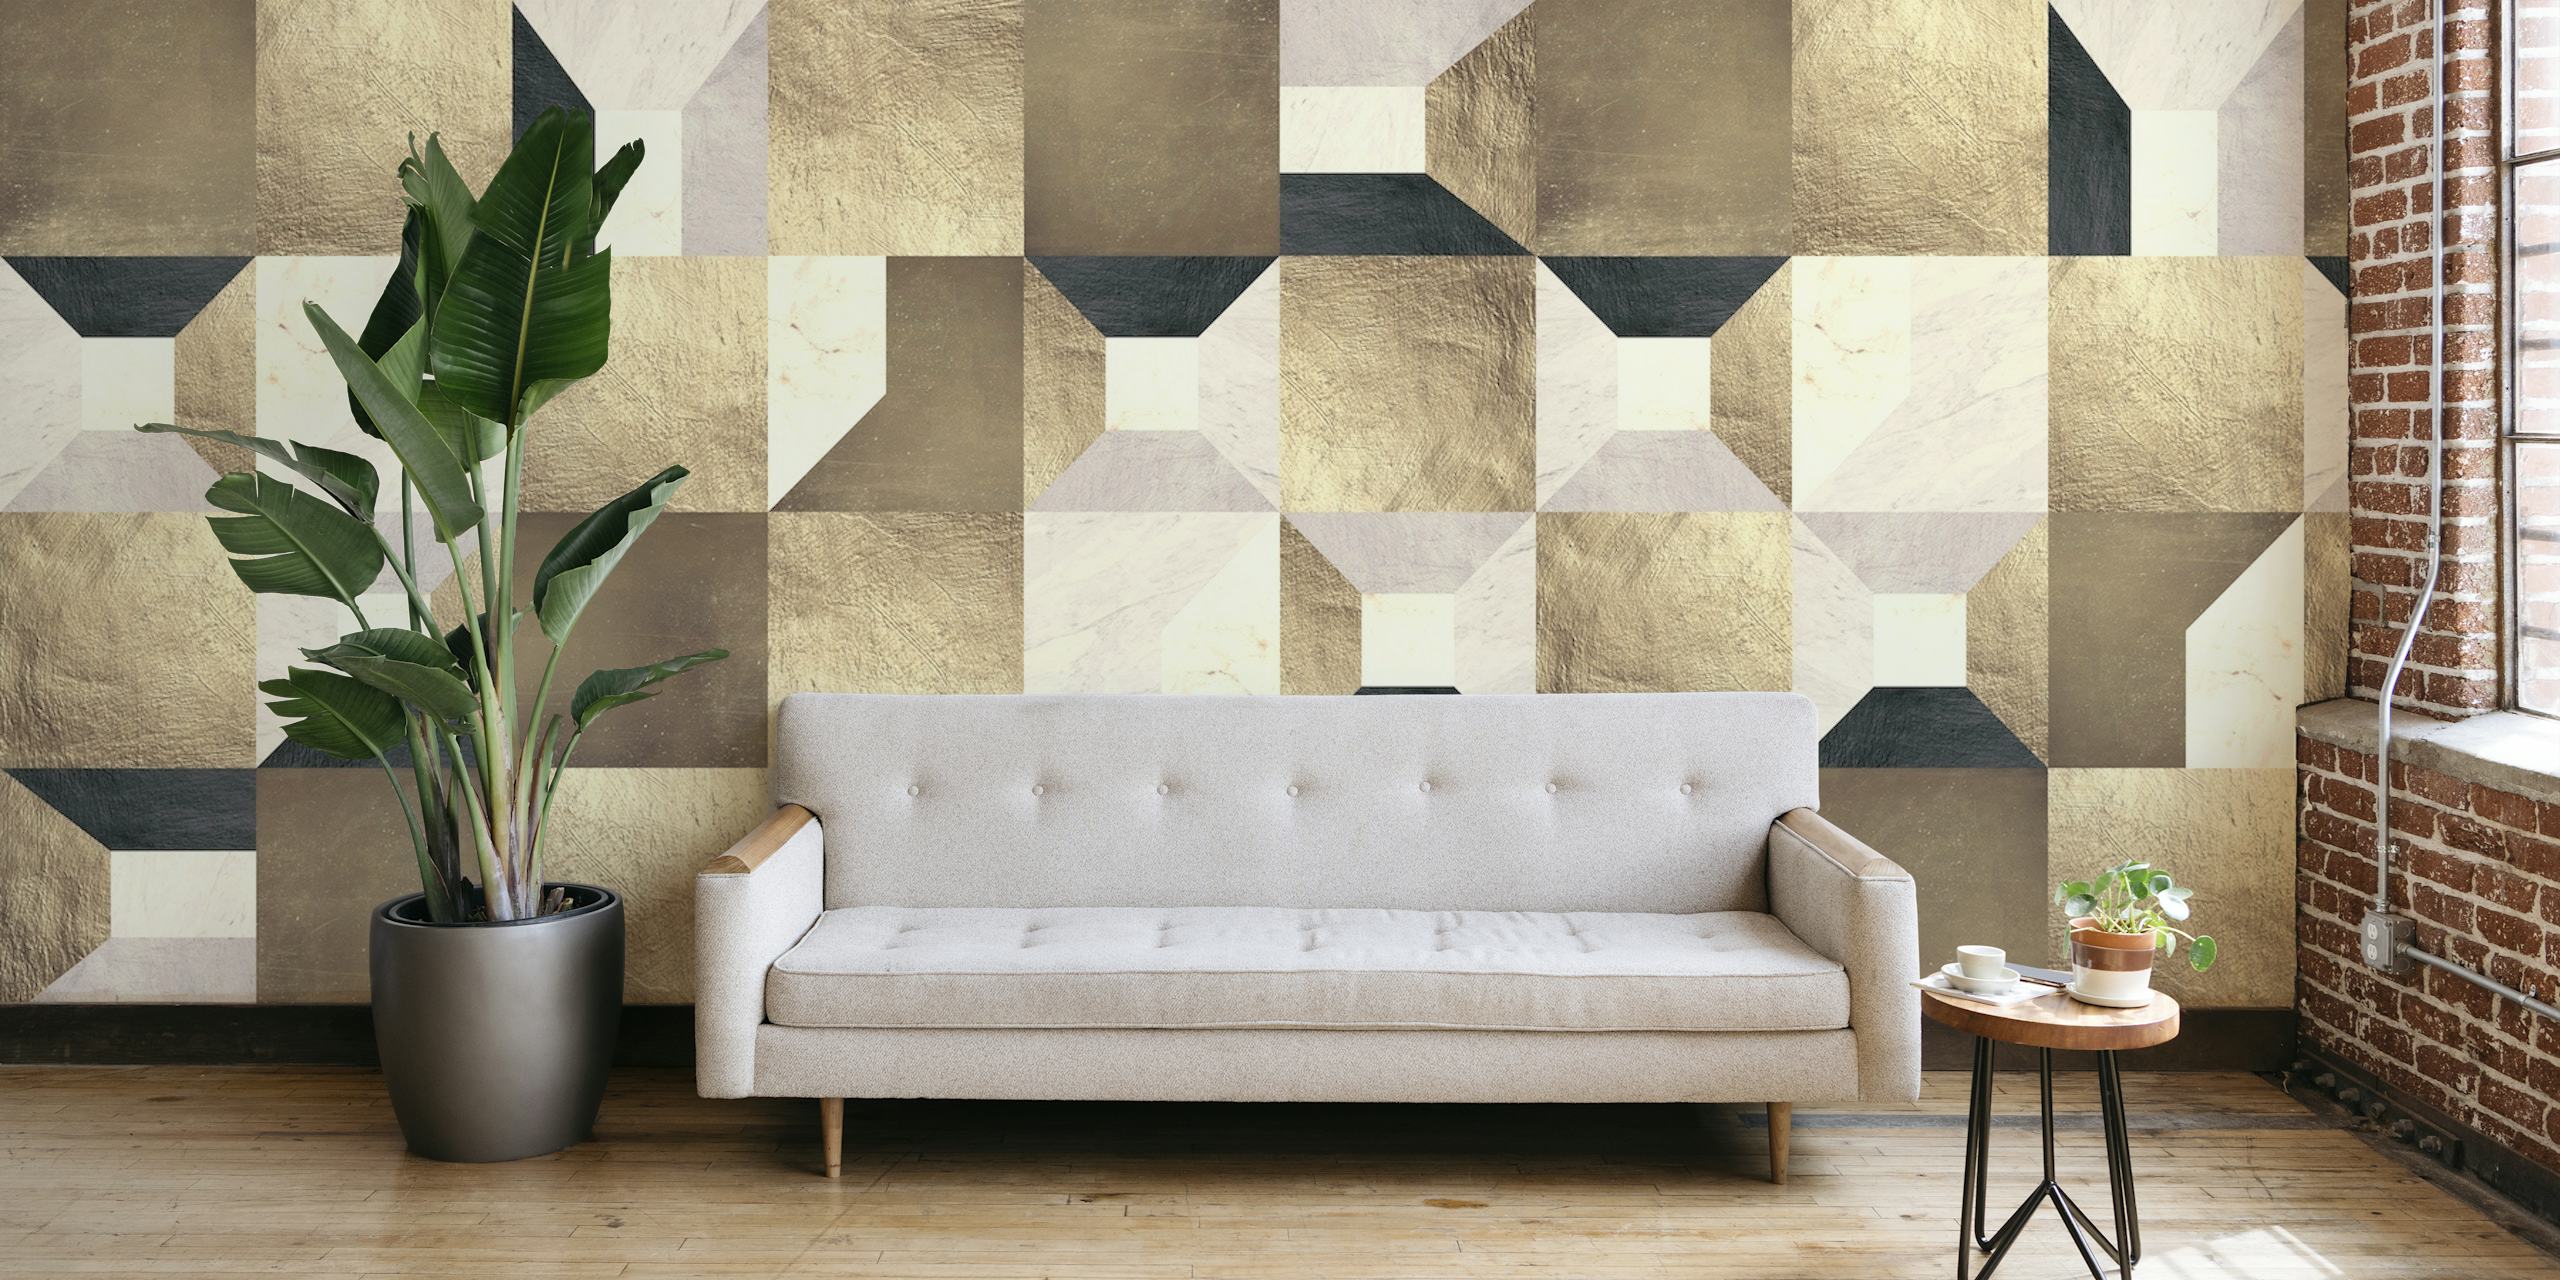 Fotomural de cuadrados geométricos dorados con una mezcla de tonos beige, crema y dorado formando un patrón elegante.